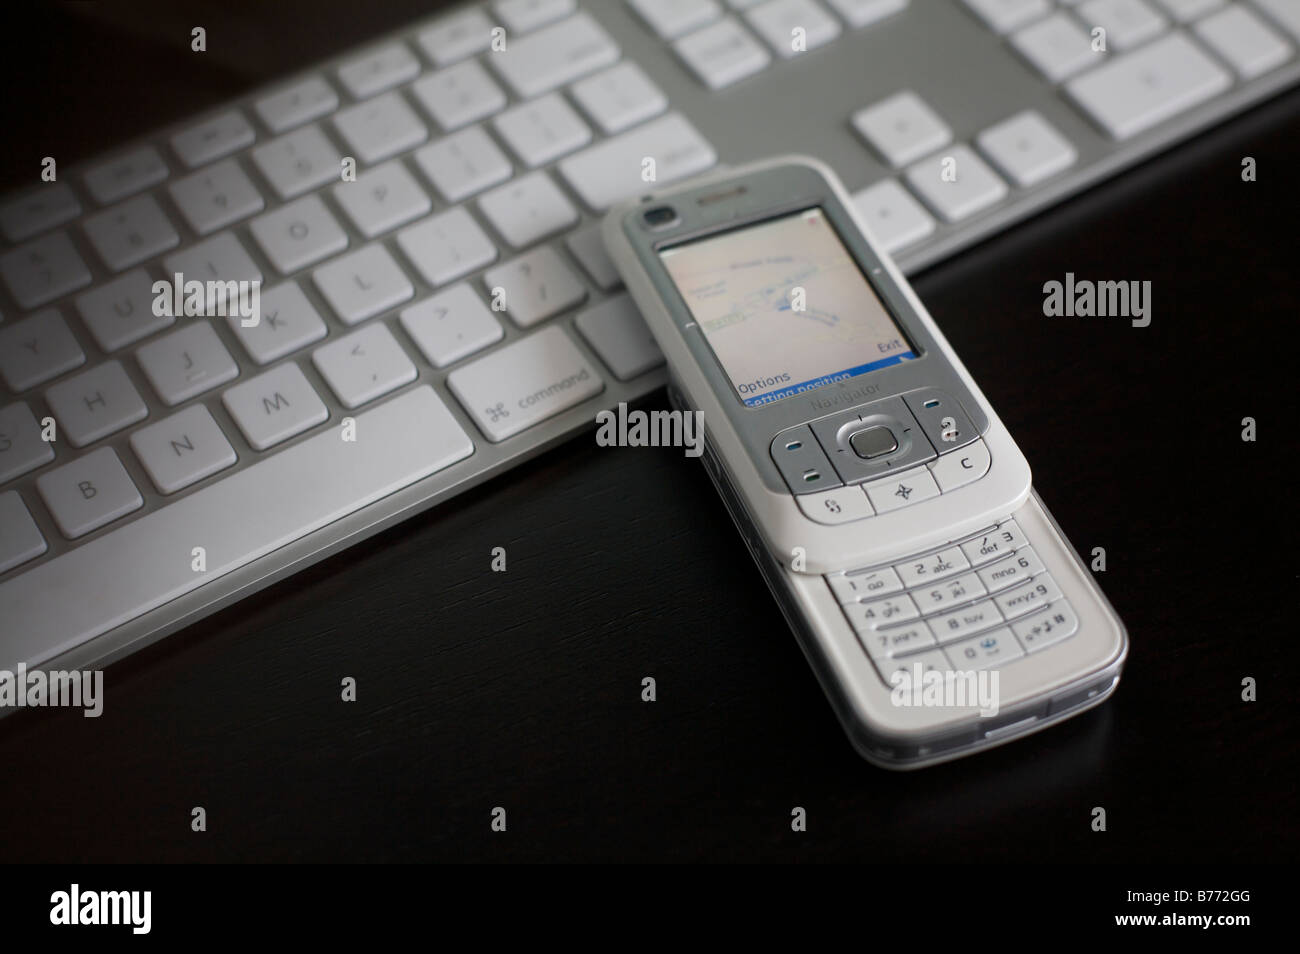 Nokia 6110 Navigator con el teclado en el fondo Foto de stock